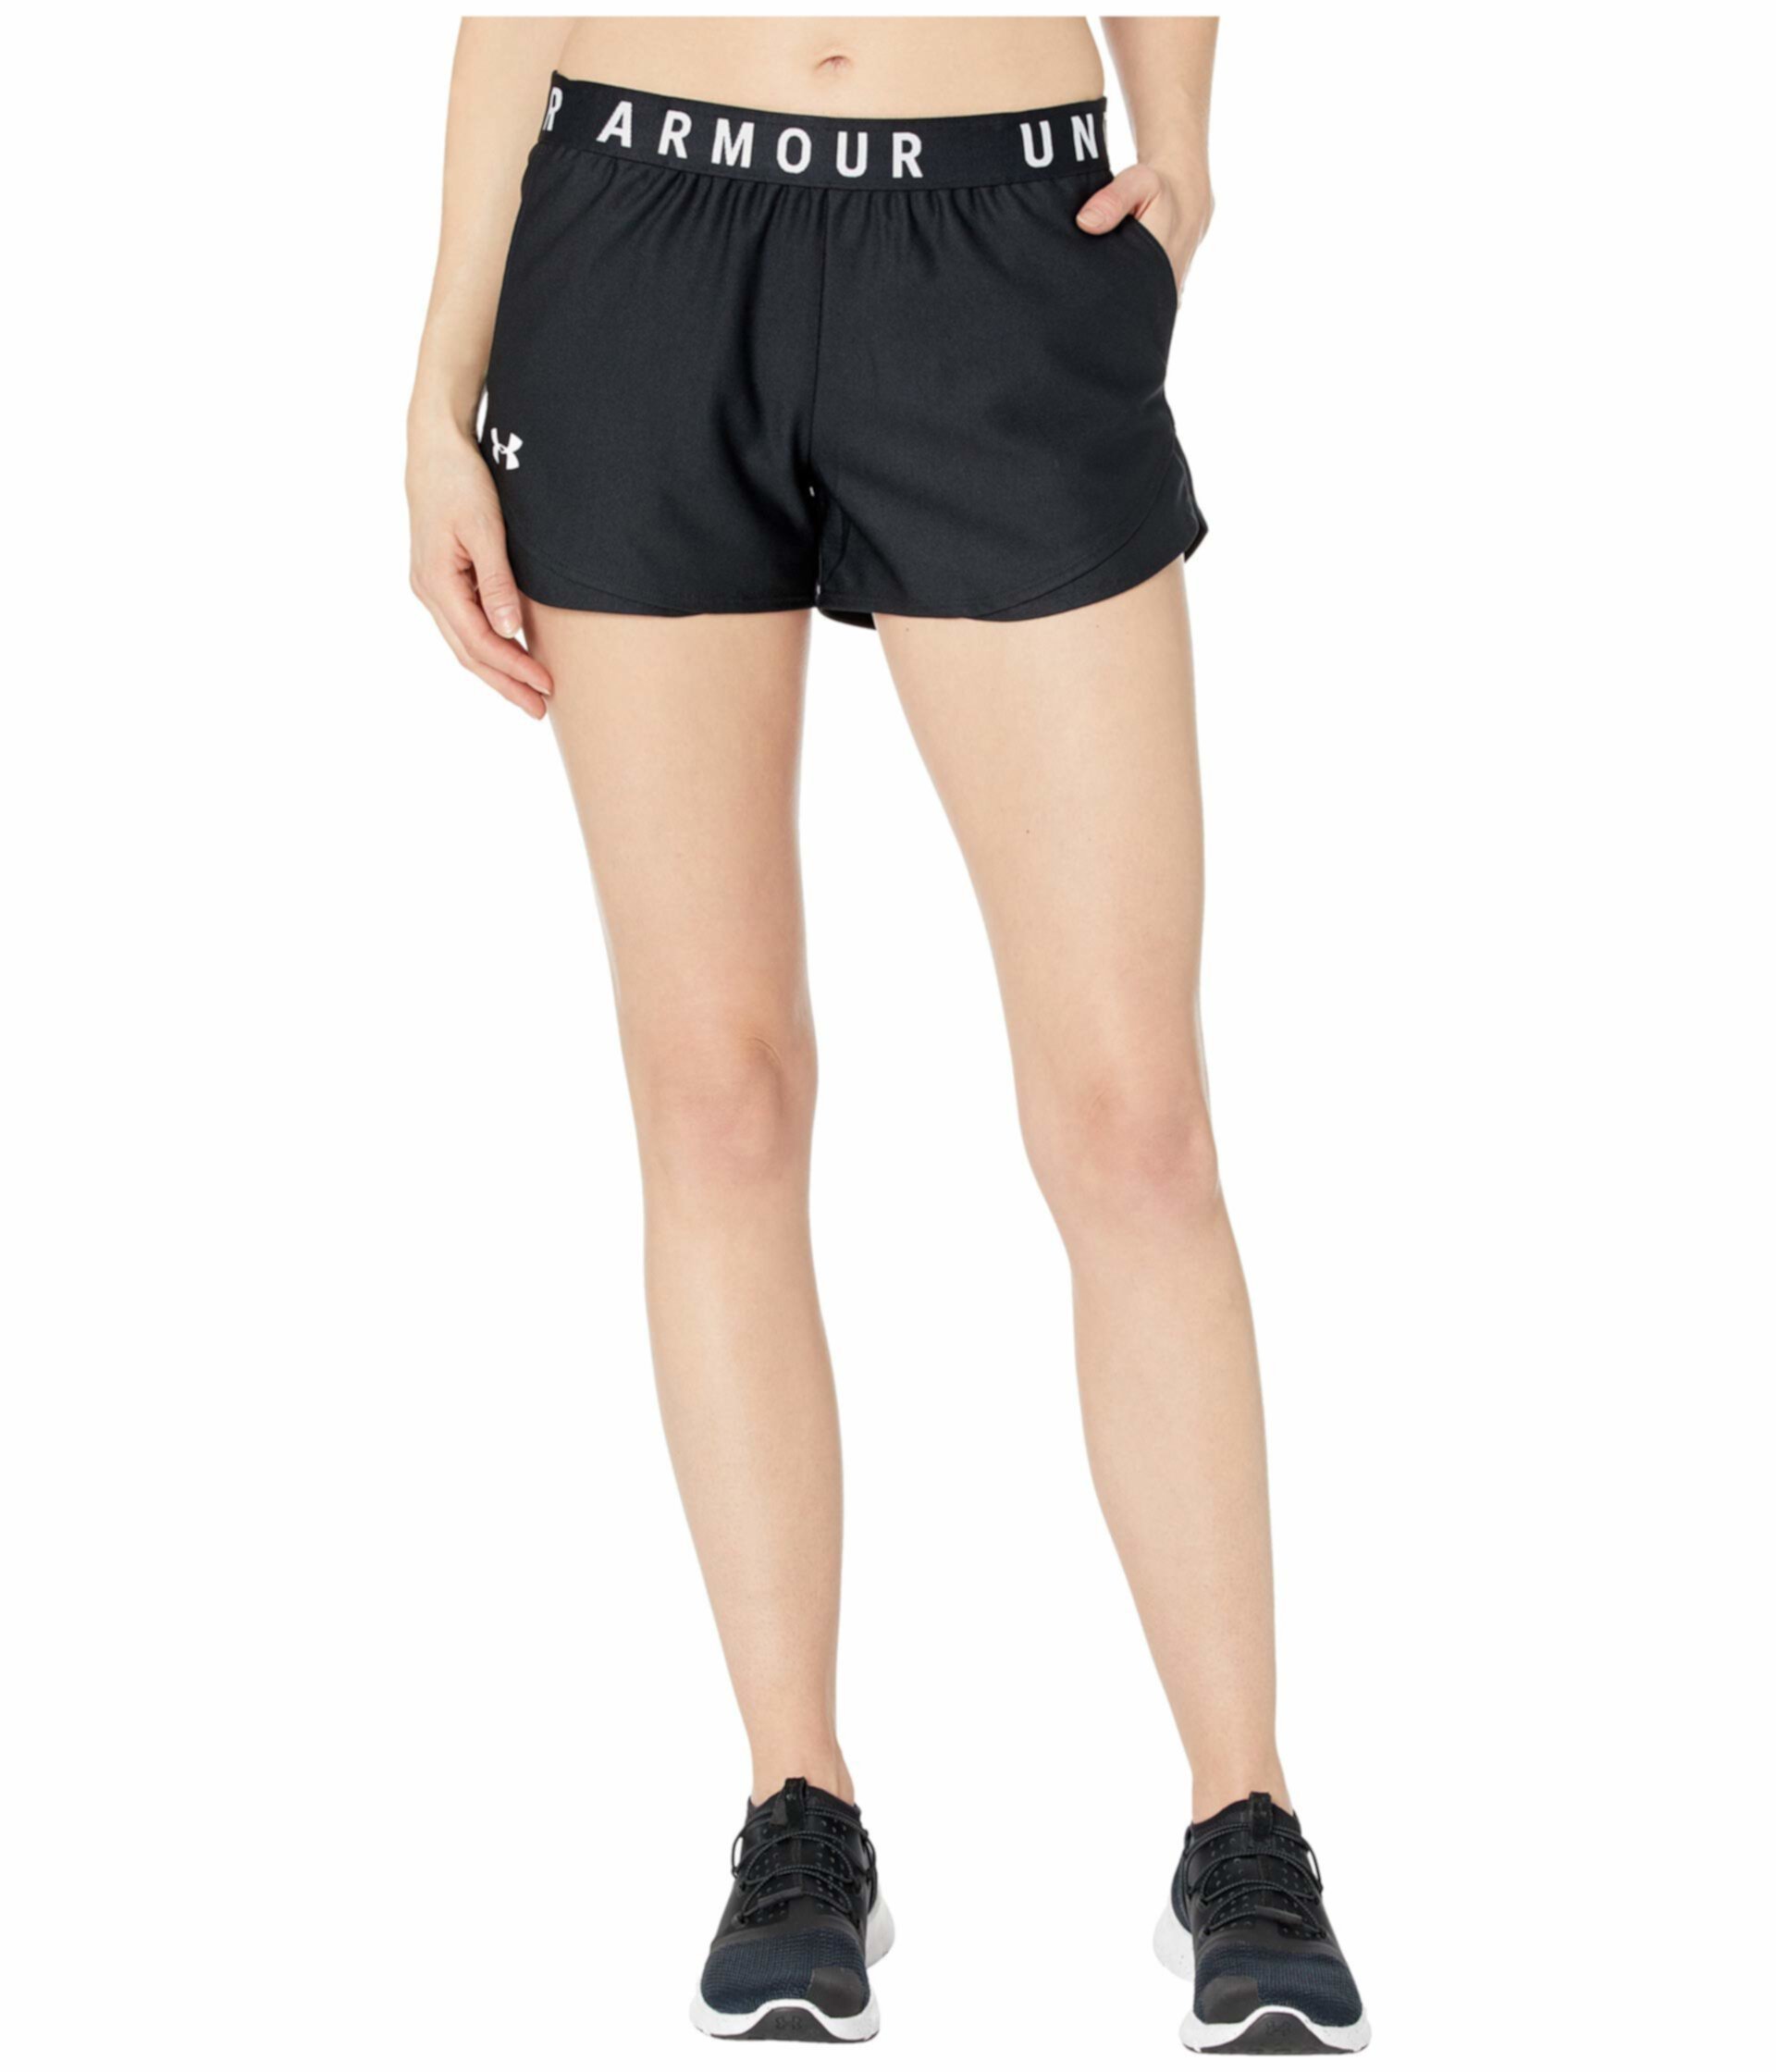 Казуальные шорты Play Up Shorts 3.0 от Under Armour для женщин Under Armour